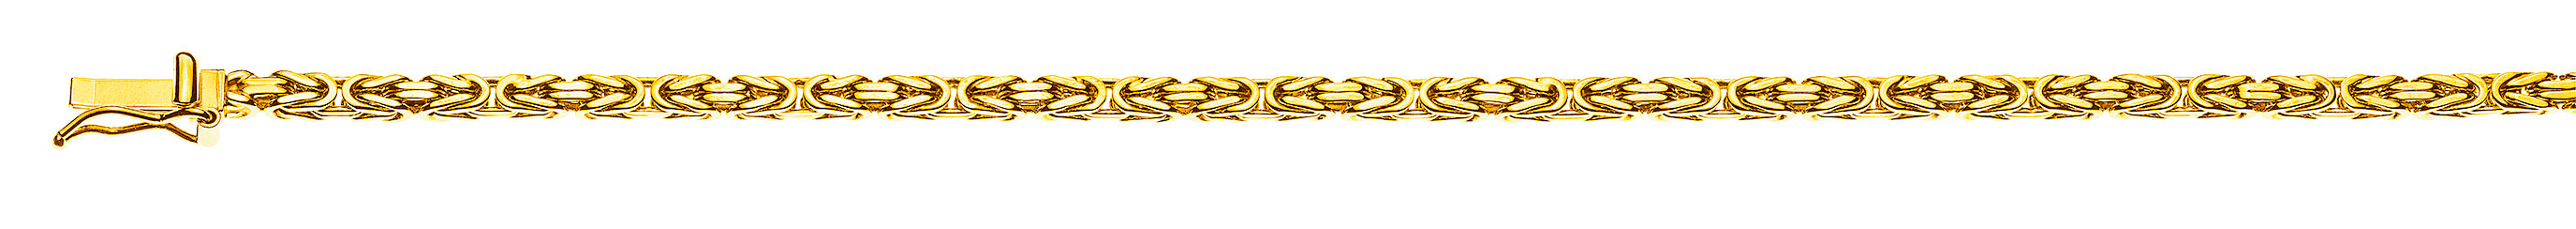 AURONOS Prestige Collier en or jaune 18K chaîne royale 45cm 2.5mm